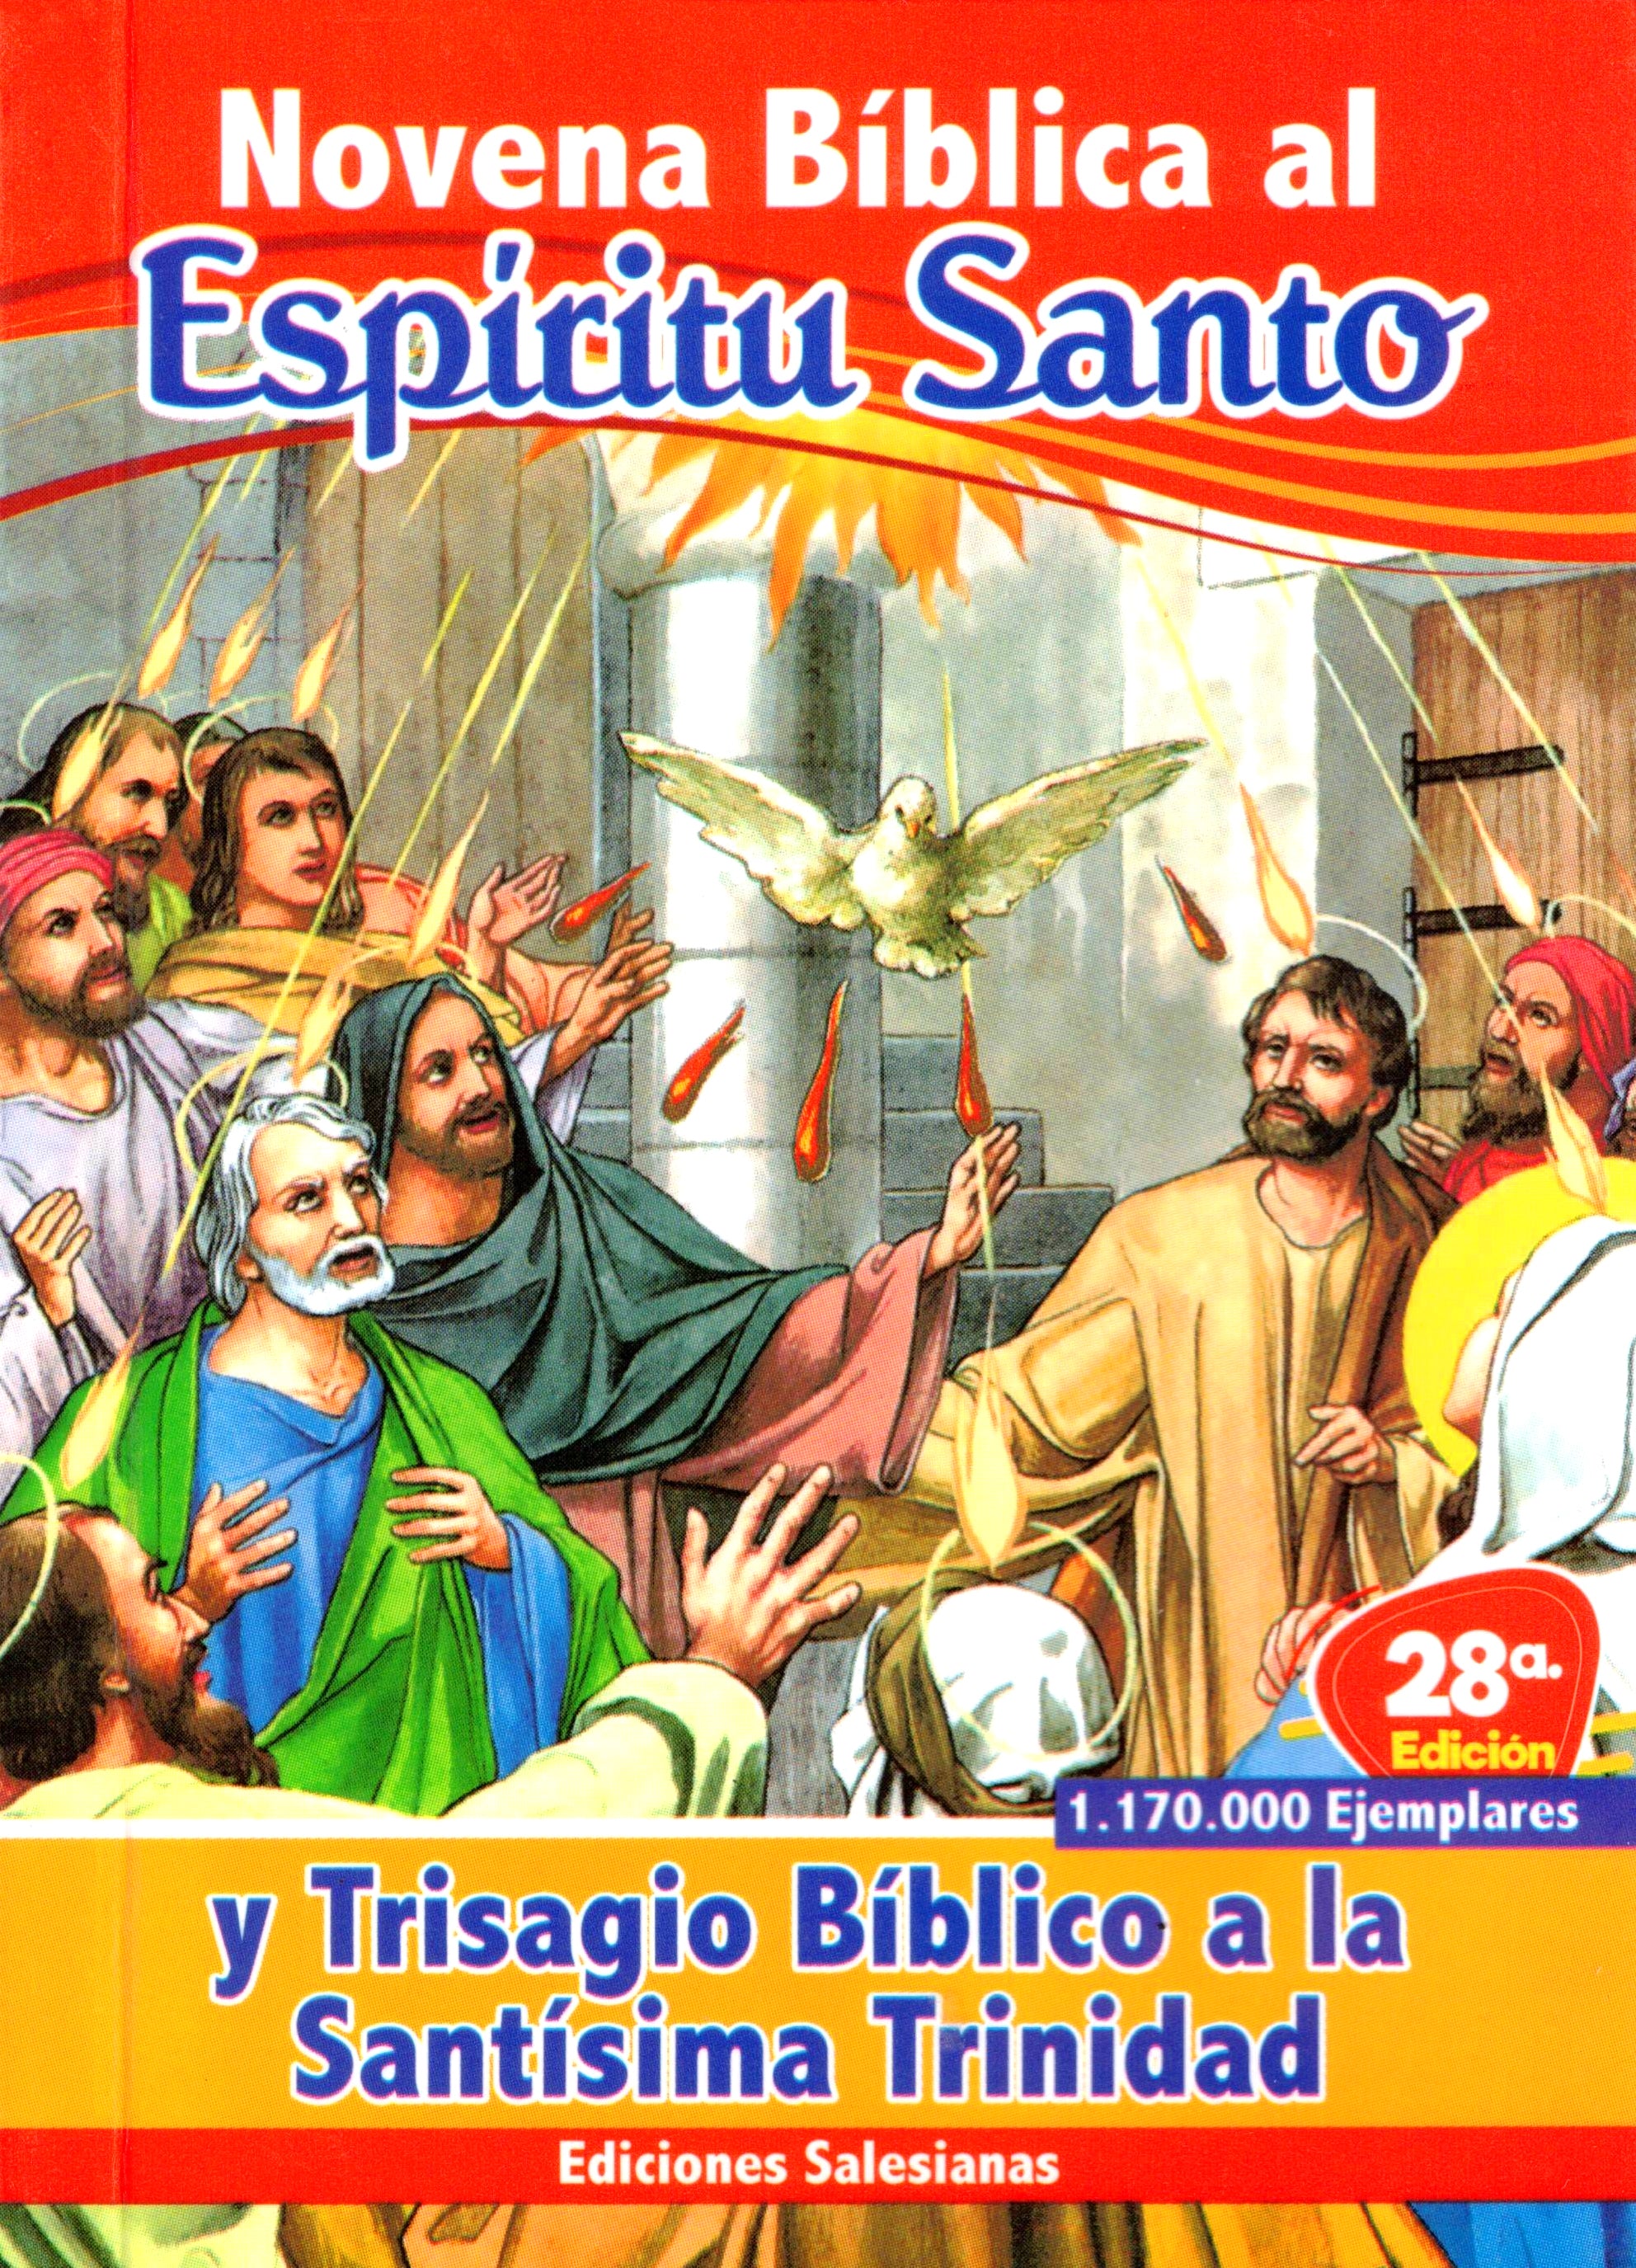 Novena Bíblica al Espíritu Santo y Trisagio Bíblico a la Santísima Trinidad